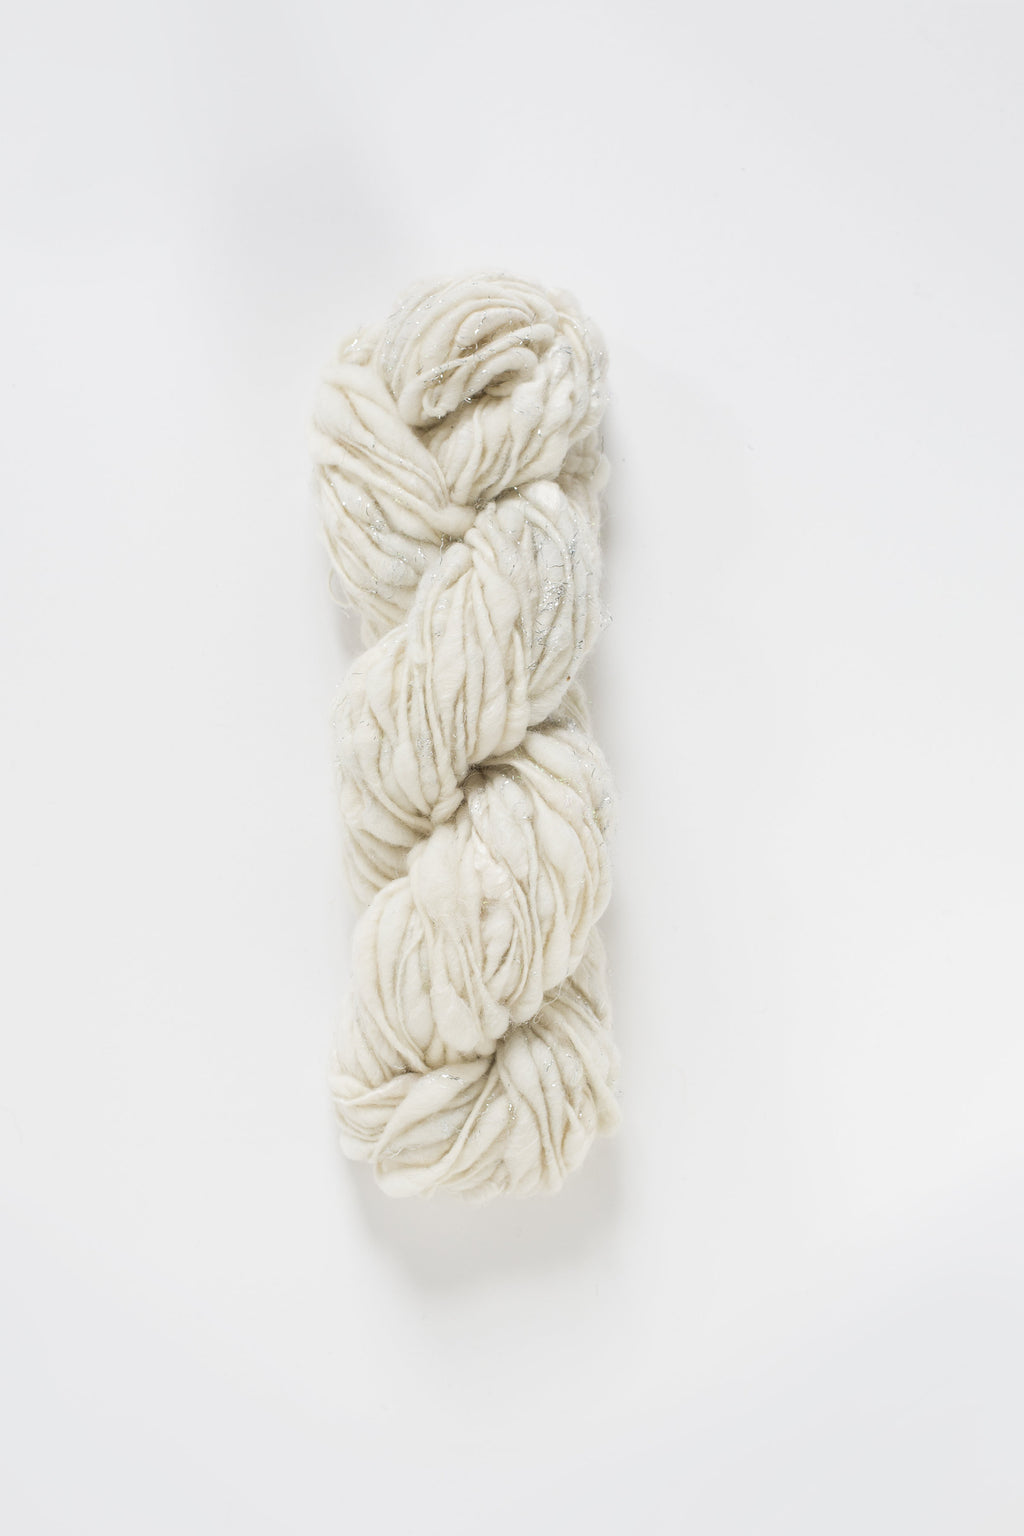 Cast Away Yarn hand knitting yarn - chunky bulky handspun yarn in Coconut Sparkle